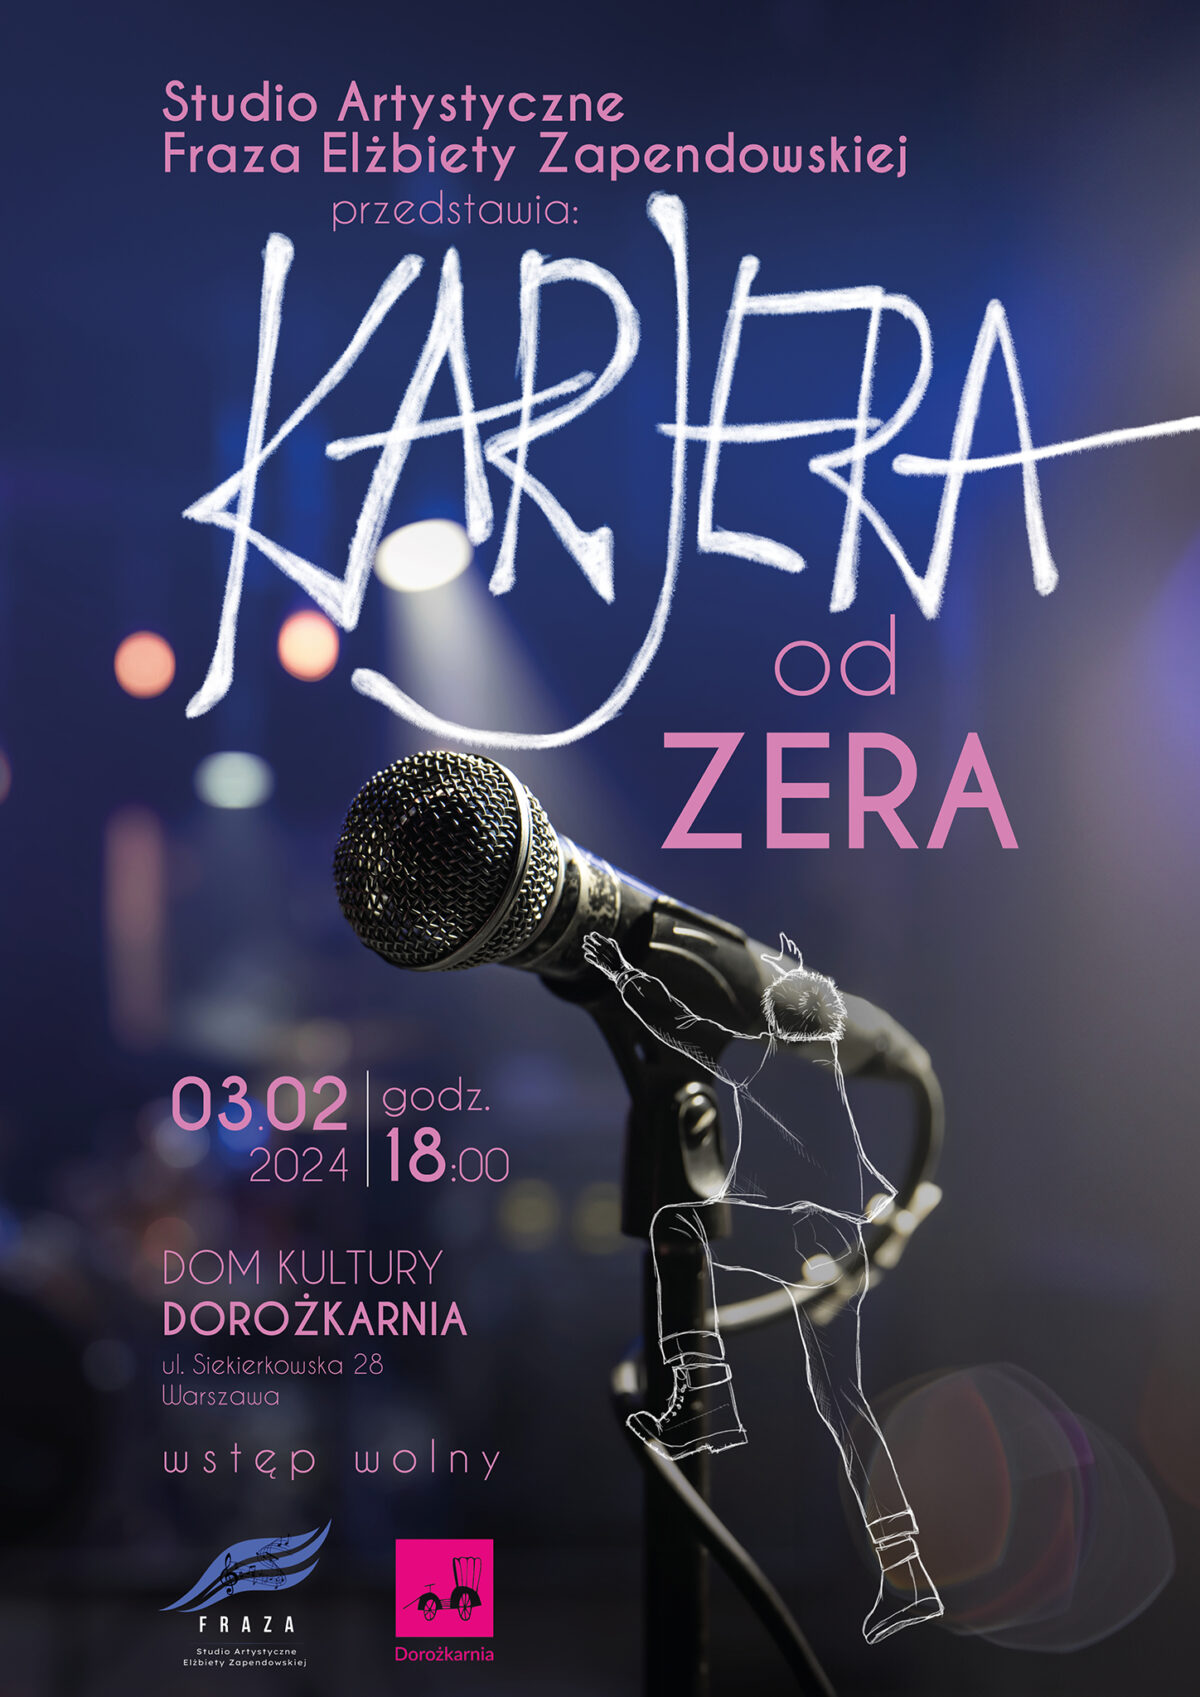 Plakat koncertu "Kariera od zera" w wykonaniu Studia Elżbiety Zapendowskiej Fraza - Mikrofon z rysunkiem wdrapującej się nań postaci